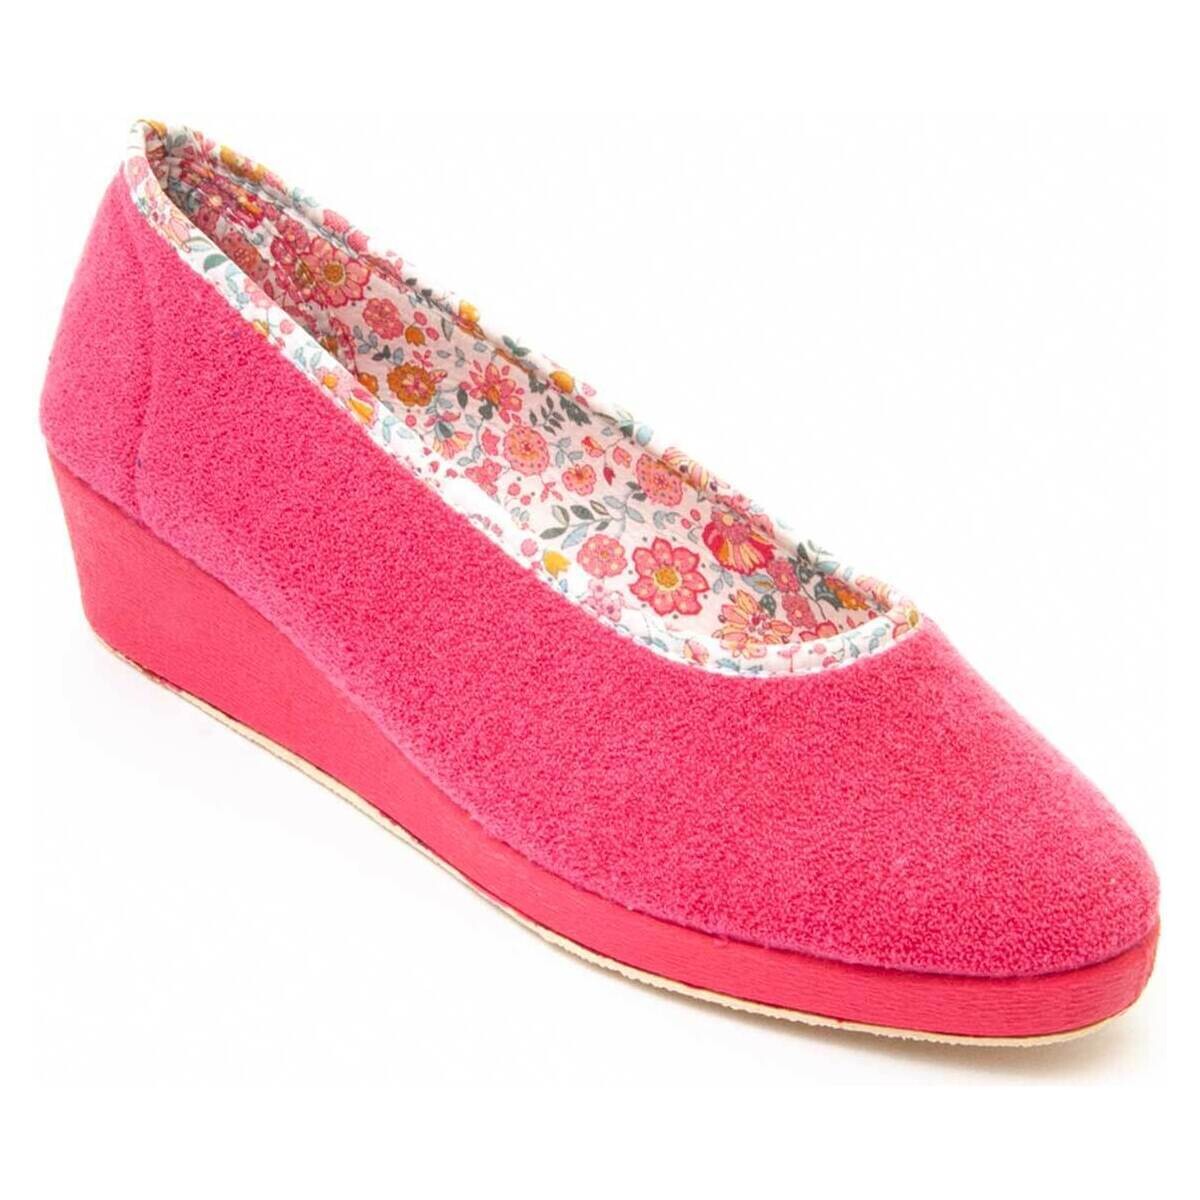 Pantofi Femei Papuci de casă Northome 81263 roz